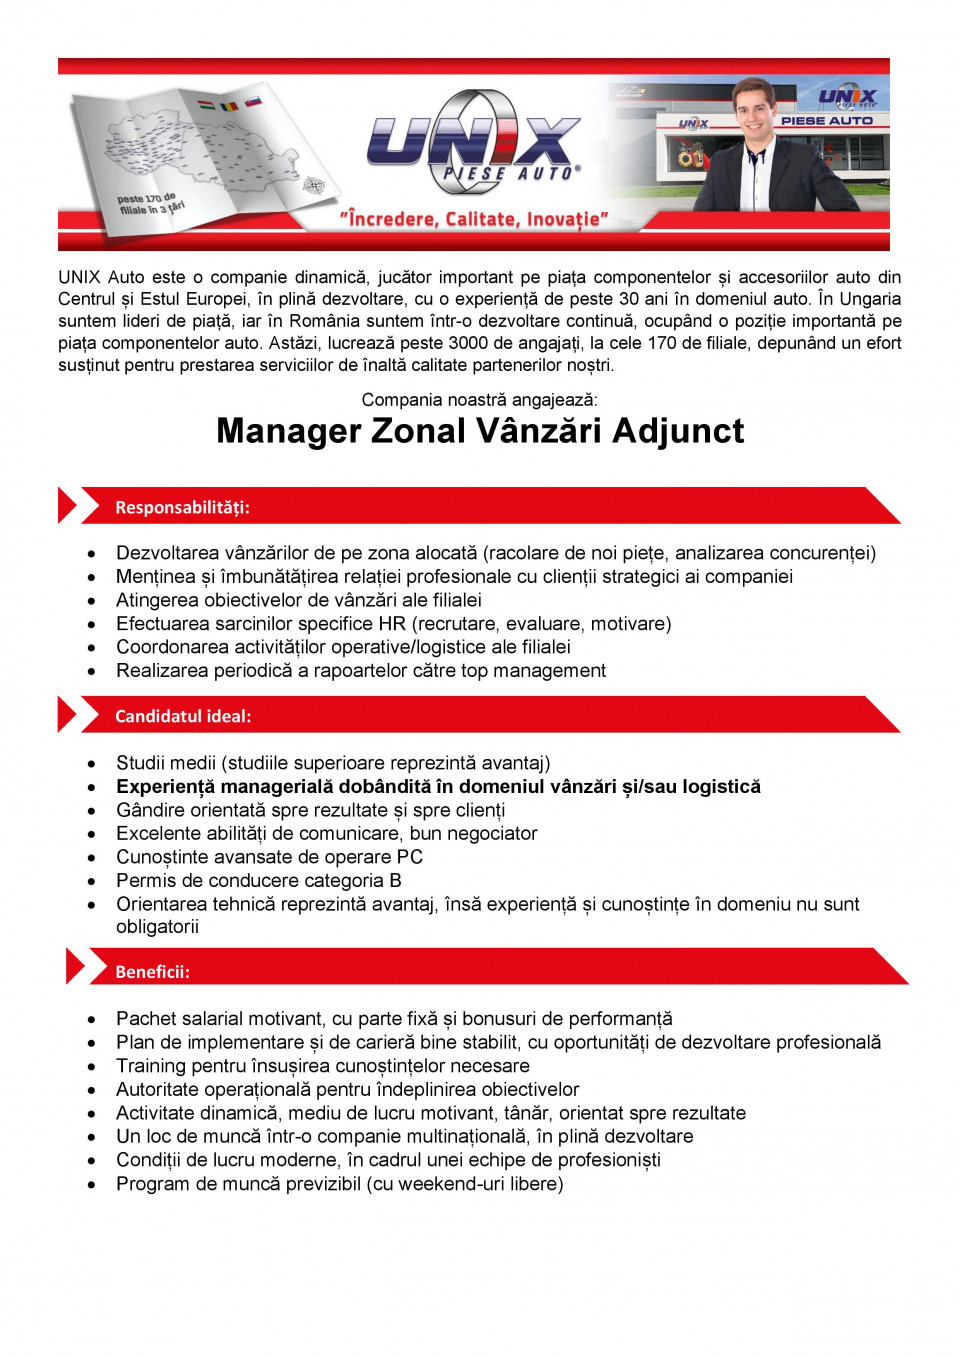 Manager Zonal Vanzari Adjunct